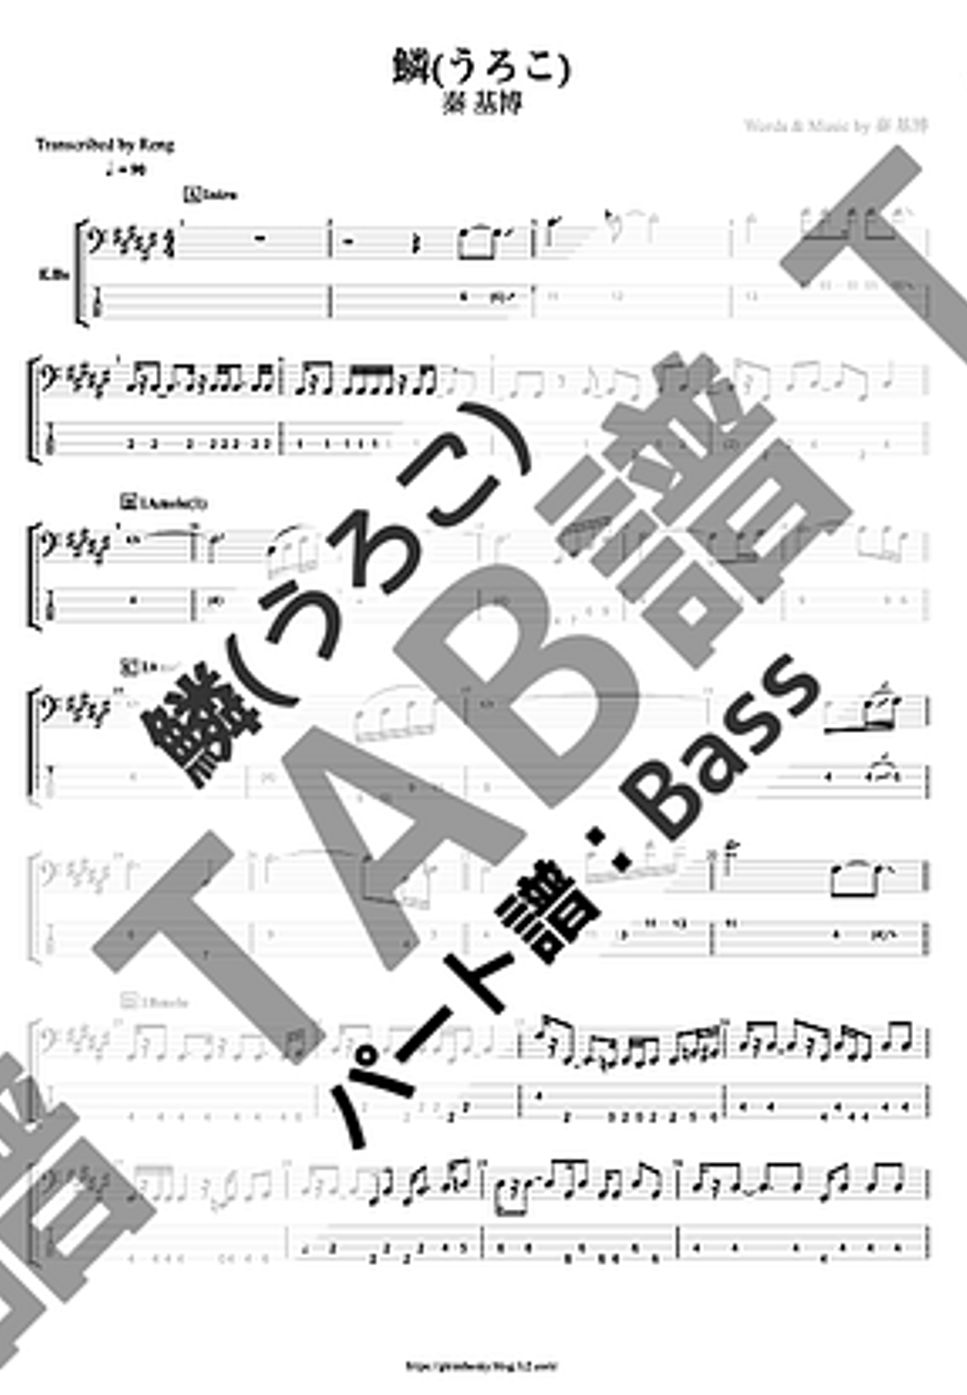 秦 基博 - 鱗 (Bass/TAB譜) by Score by Reng